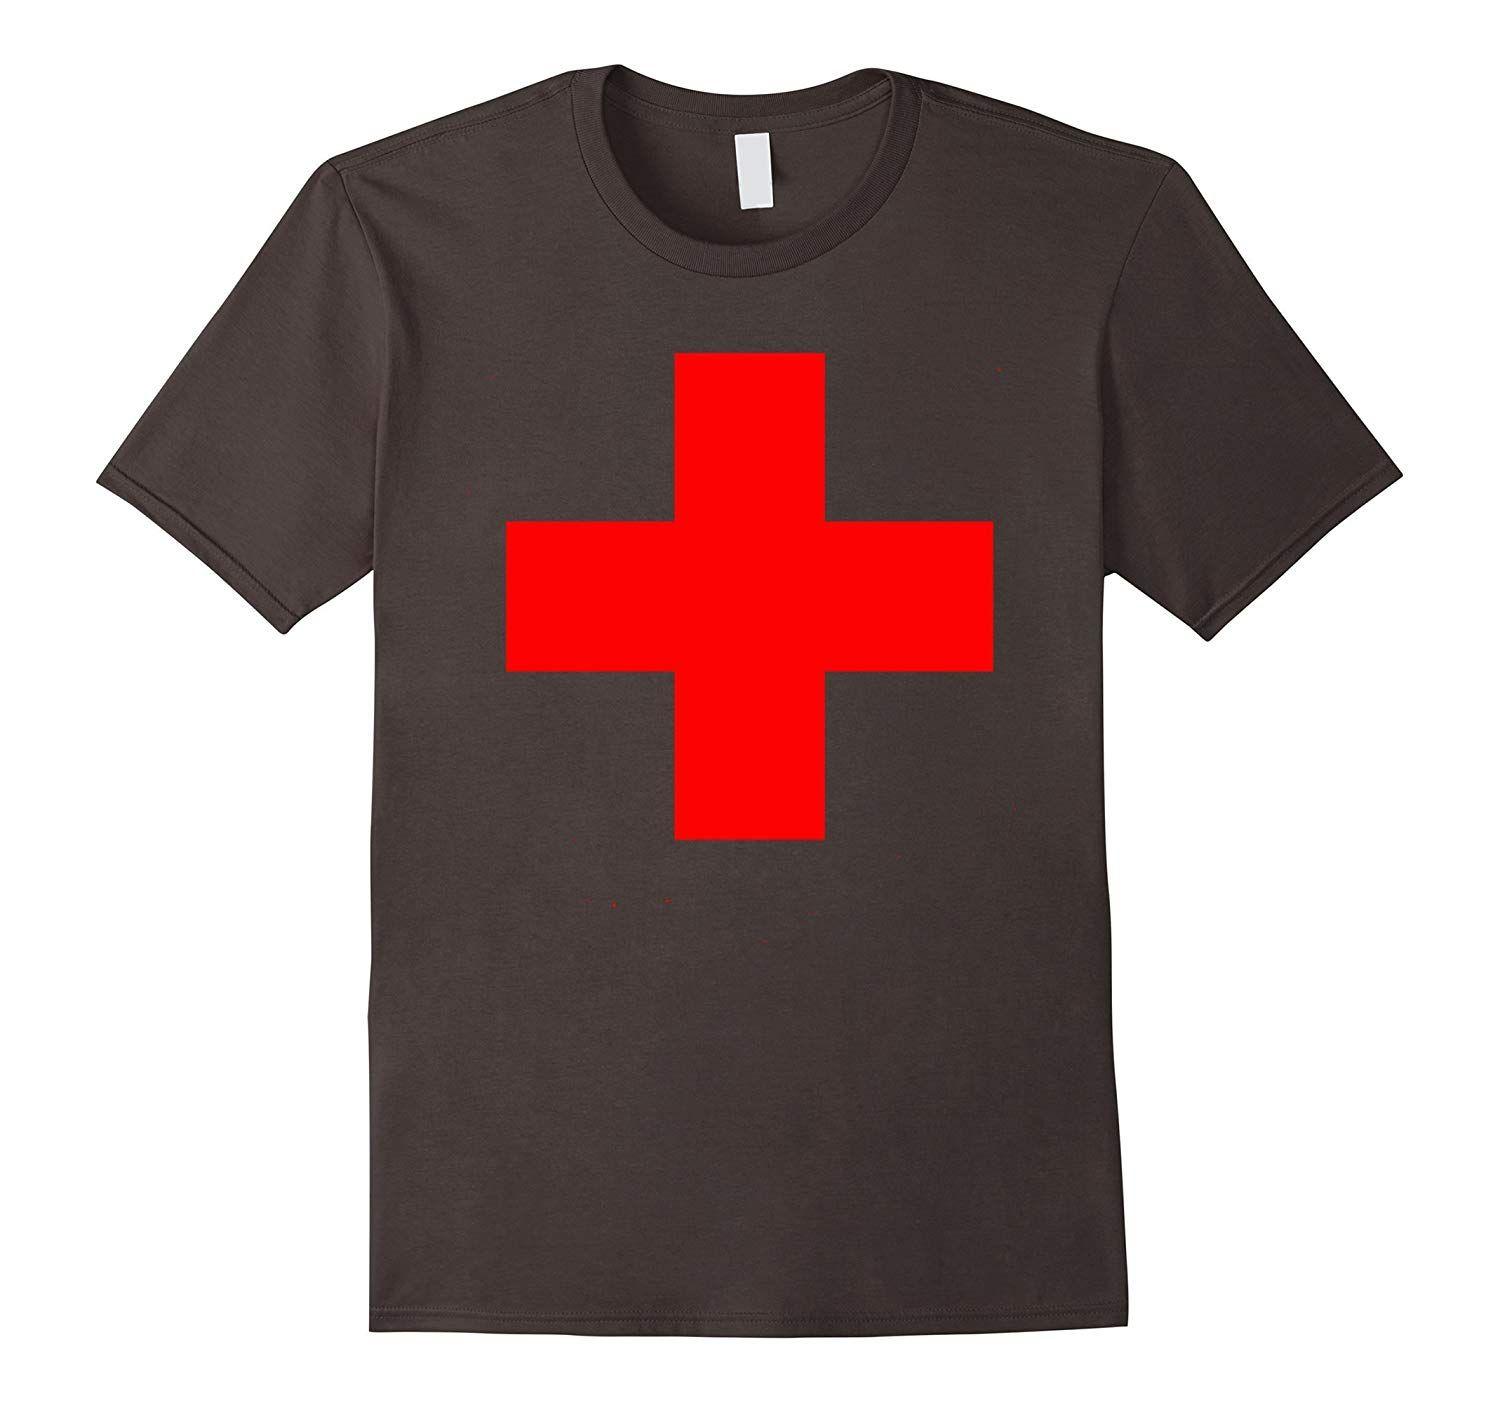 Medic Cross Logo - Large Medical Cross Emblem T-Shirt Medic Nurse MD EMT ER ED-ANZ ...